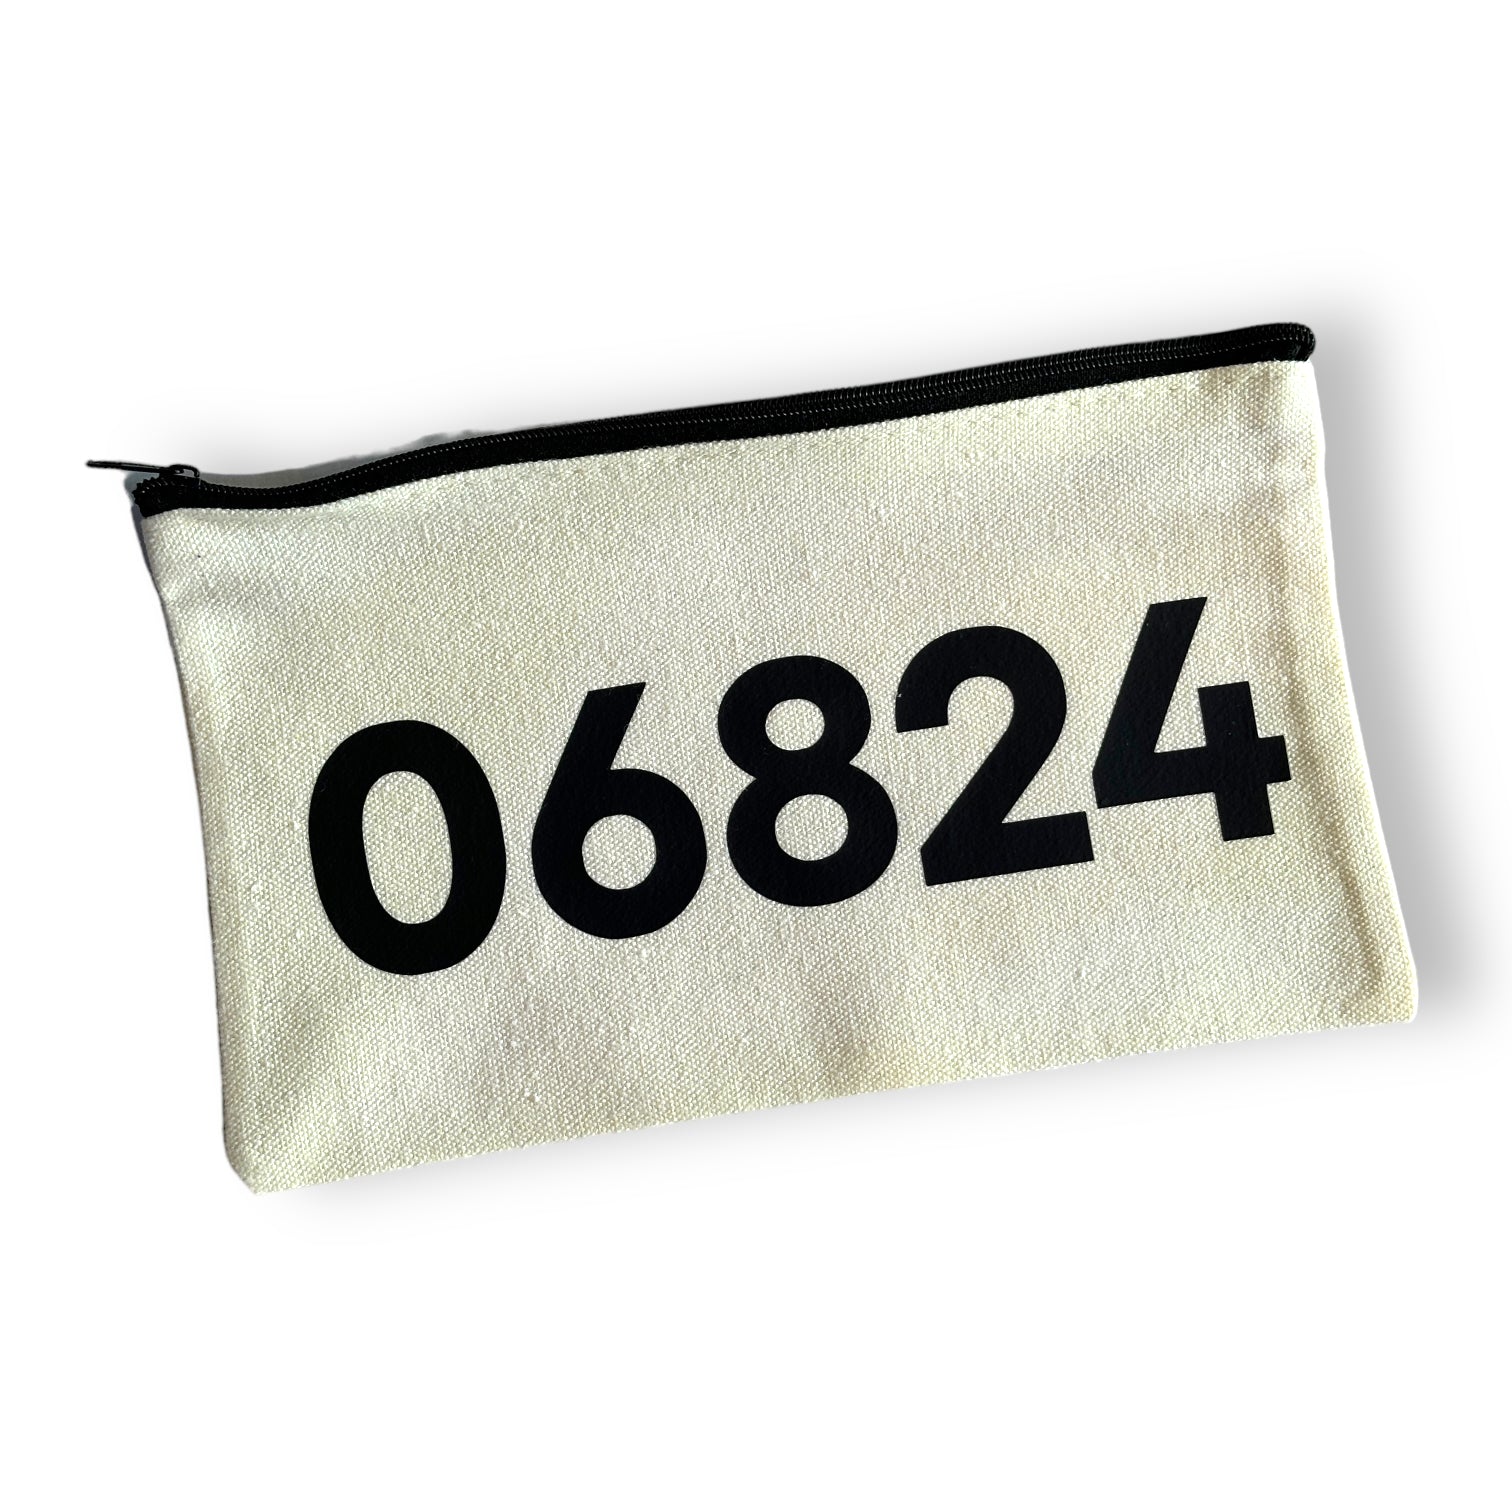 06824 - Zip Code NATURAL Canvas Zipper Bag - (Fairfield) - Mellow Monkey